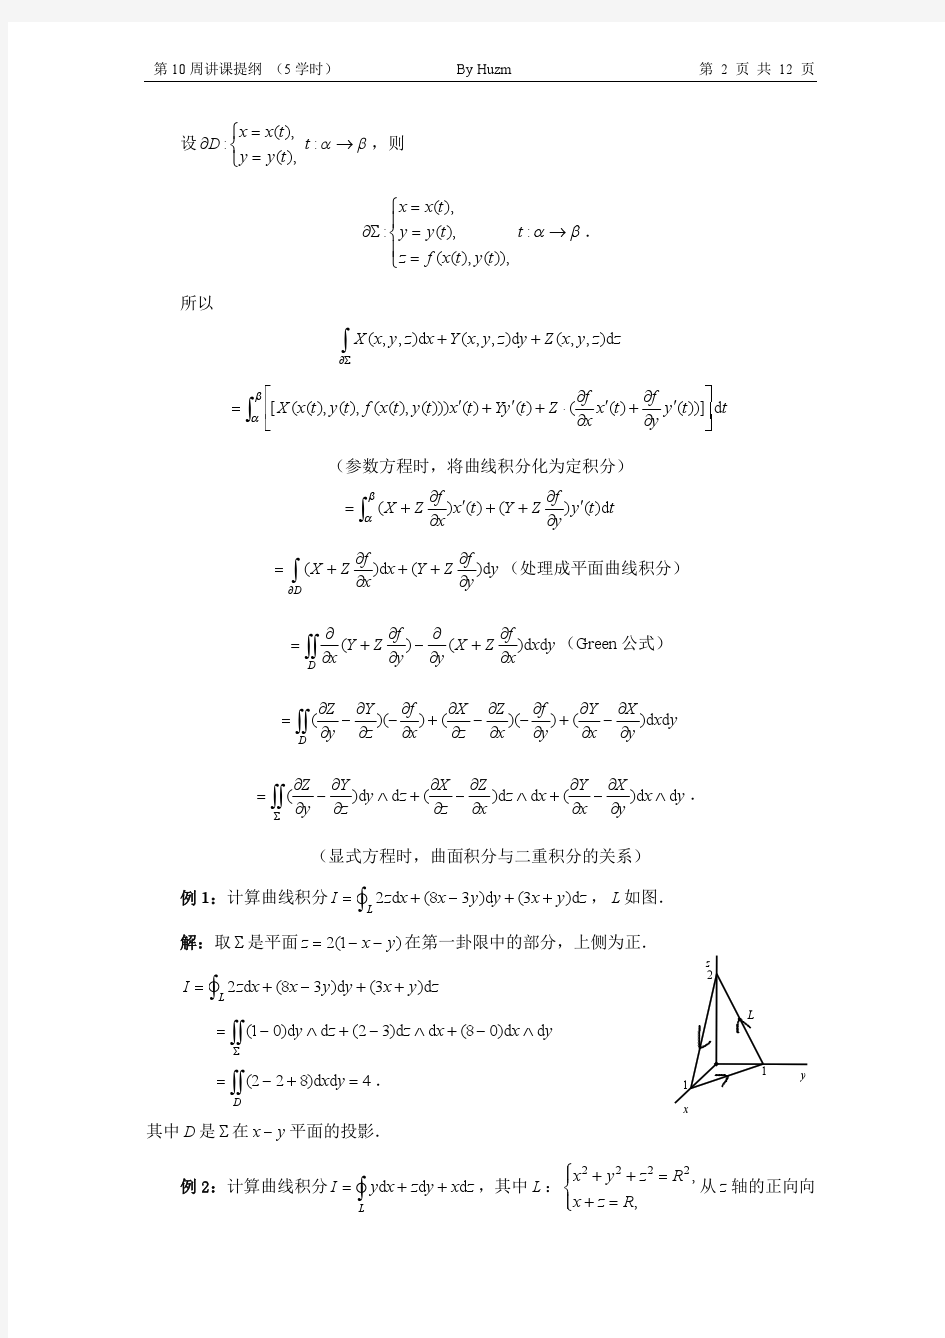 清华大学本科生高等数学微积分B(2)第十周讲课提纲(高斯Gauss公式斯托克斯Stockes formula空间向量场)